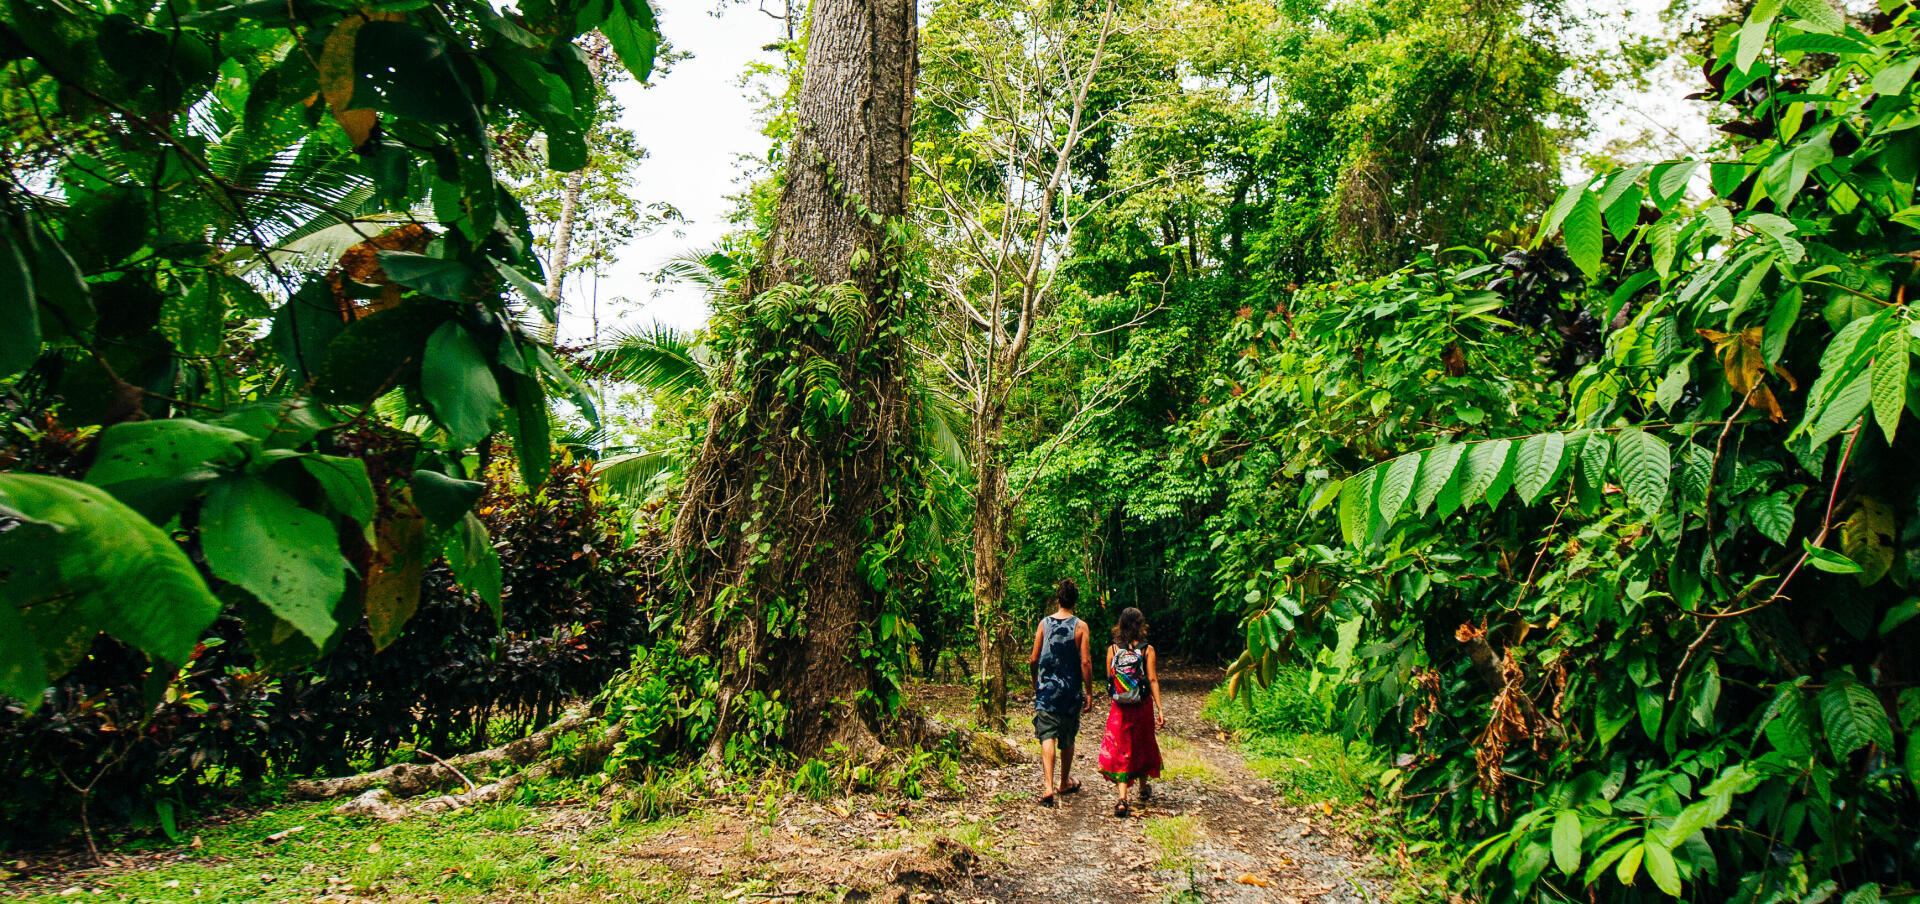 Randonnée au Costa Rica : nos idées pour partir à l'aventure